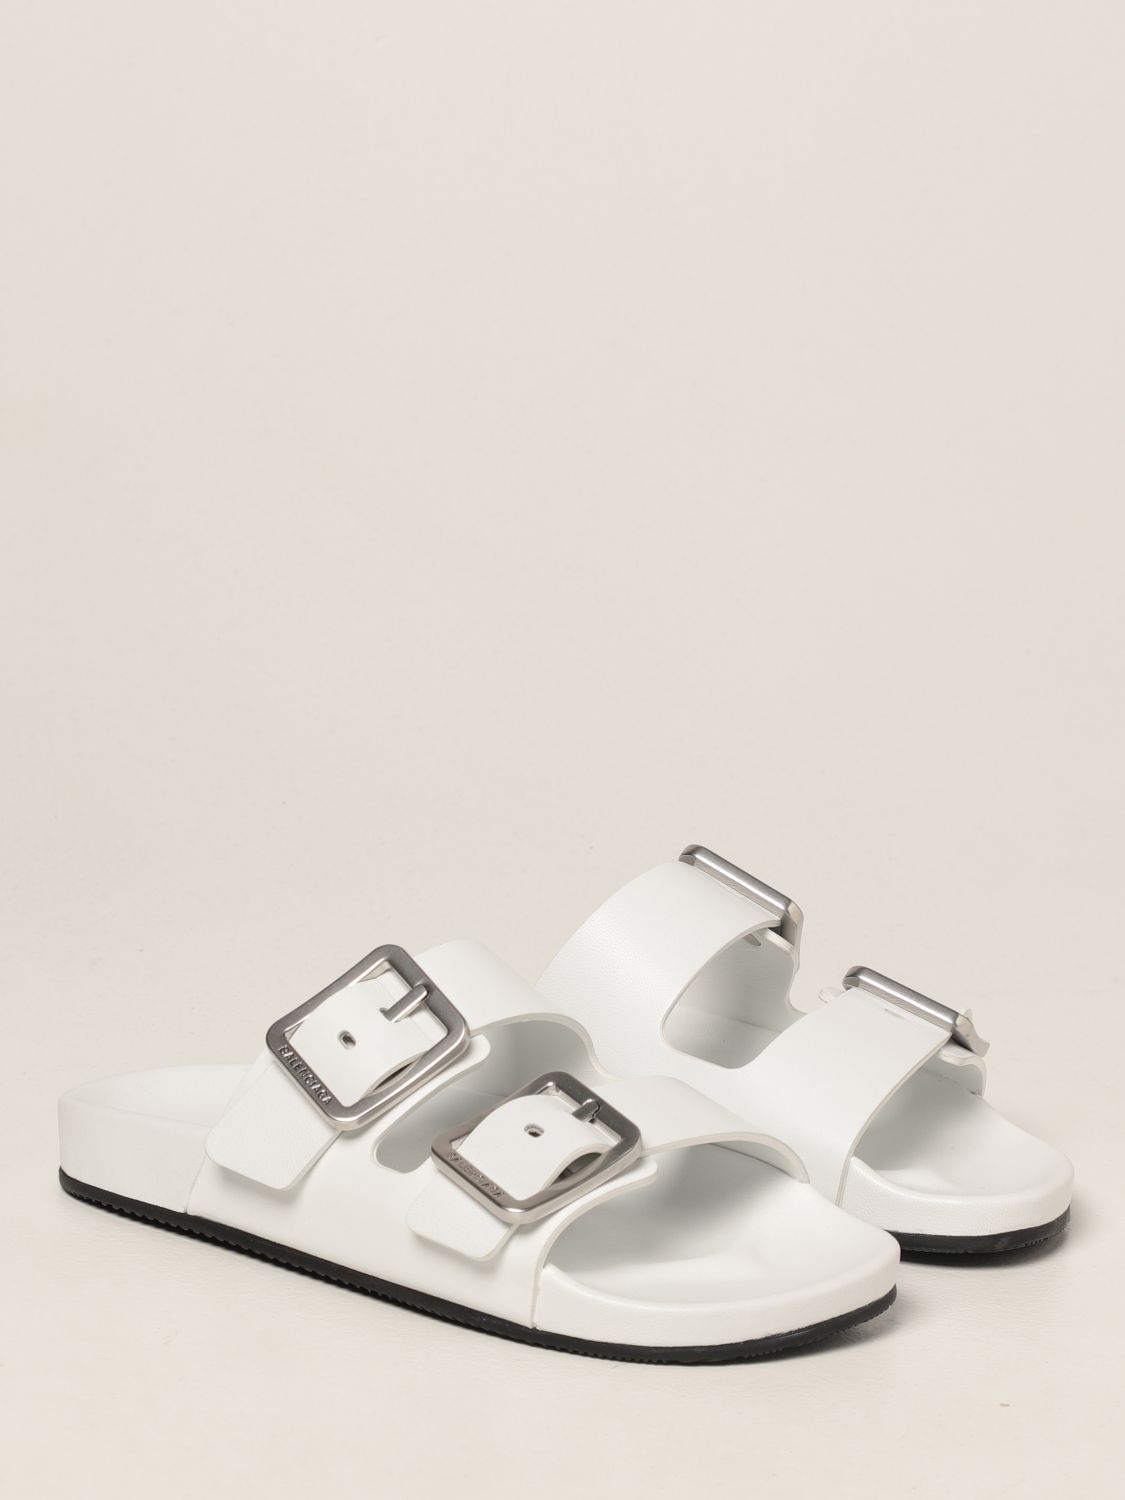 Sandalias planas Balenciaga: Zapatos mujer Balenciaga blanco 2